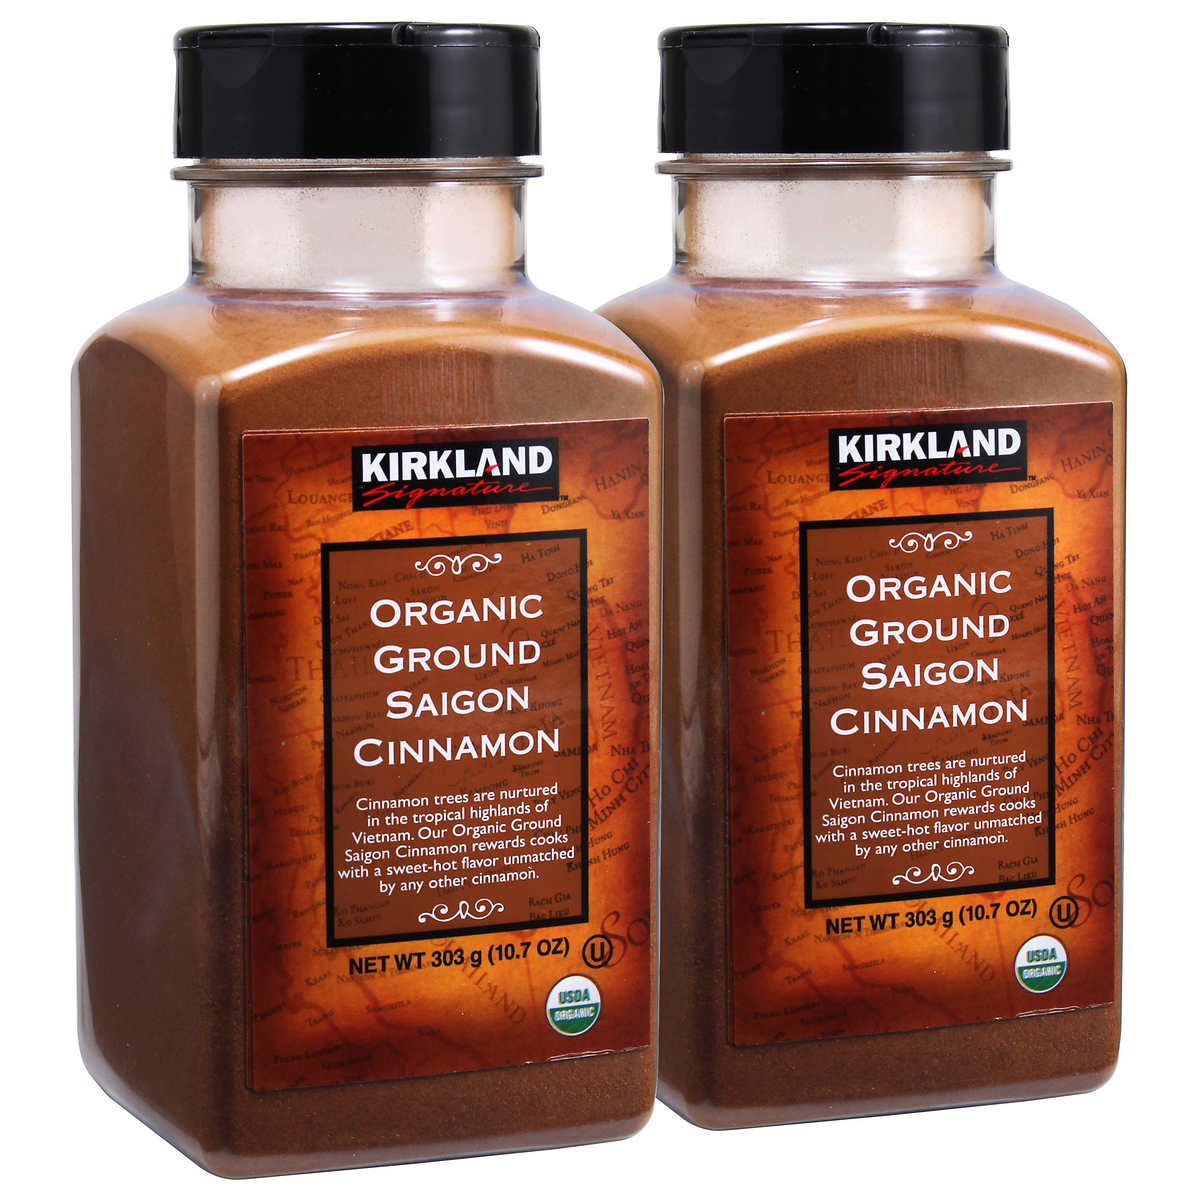 Kirkland Signature Organic Ground Saigon Cinnamon